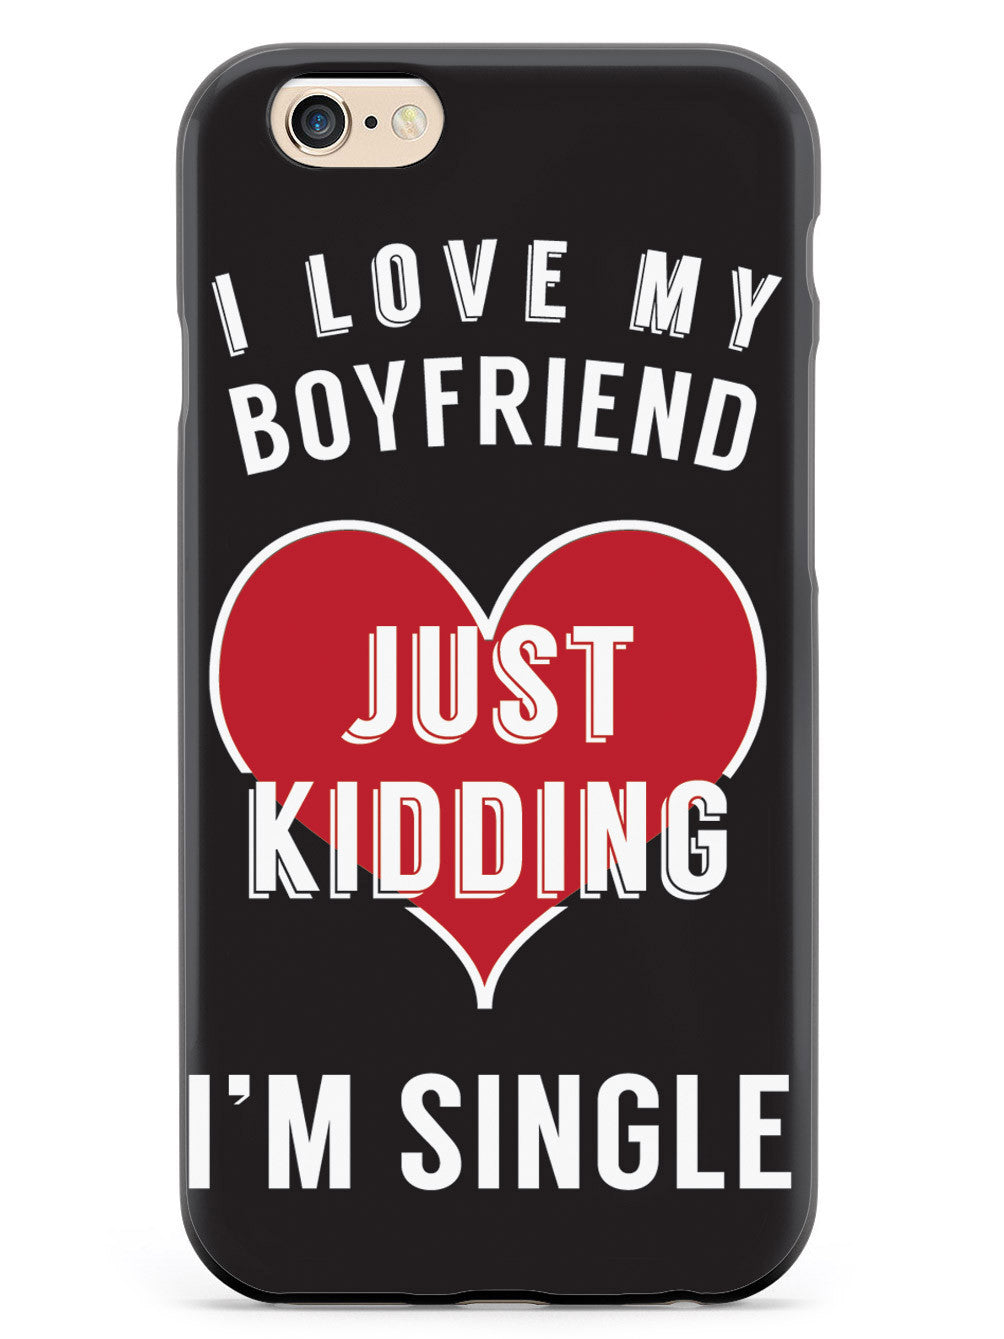 I'm Single Case